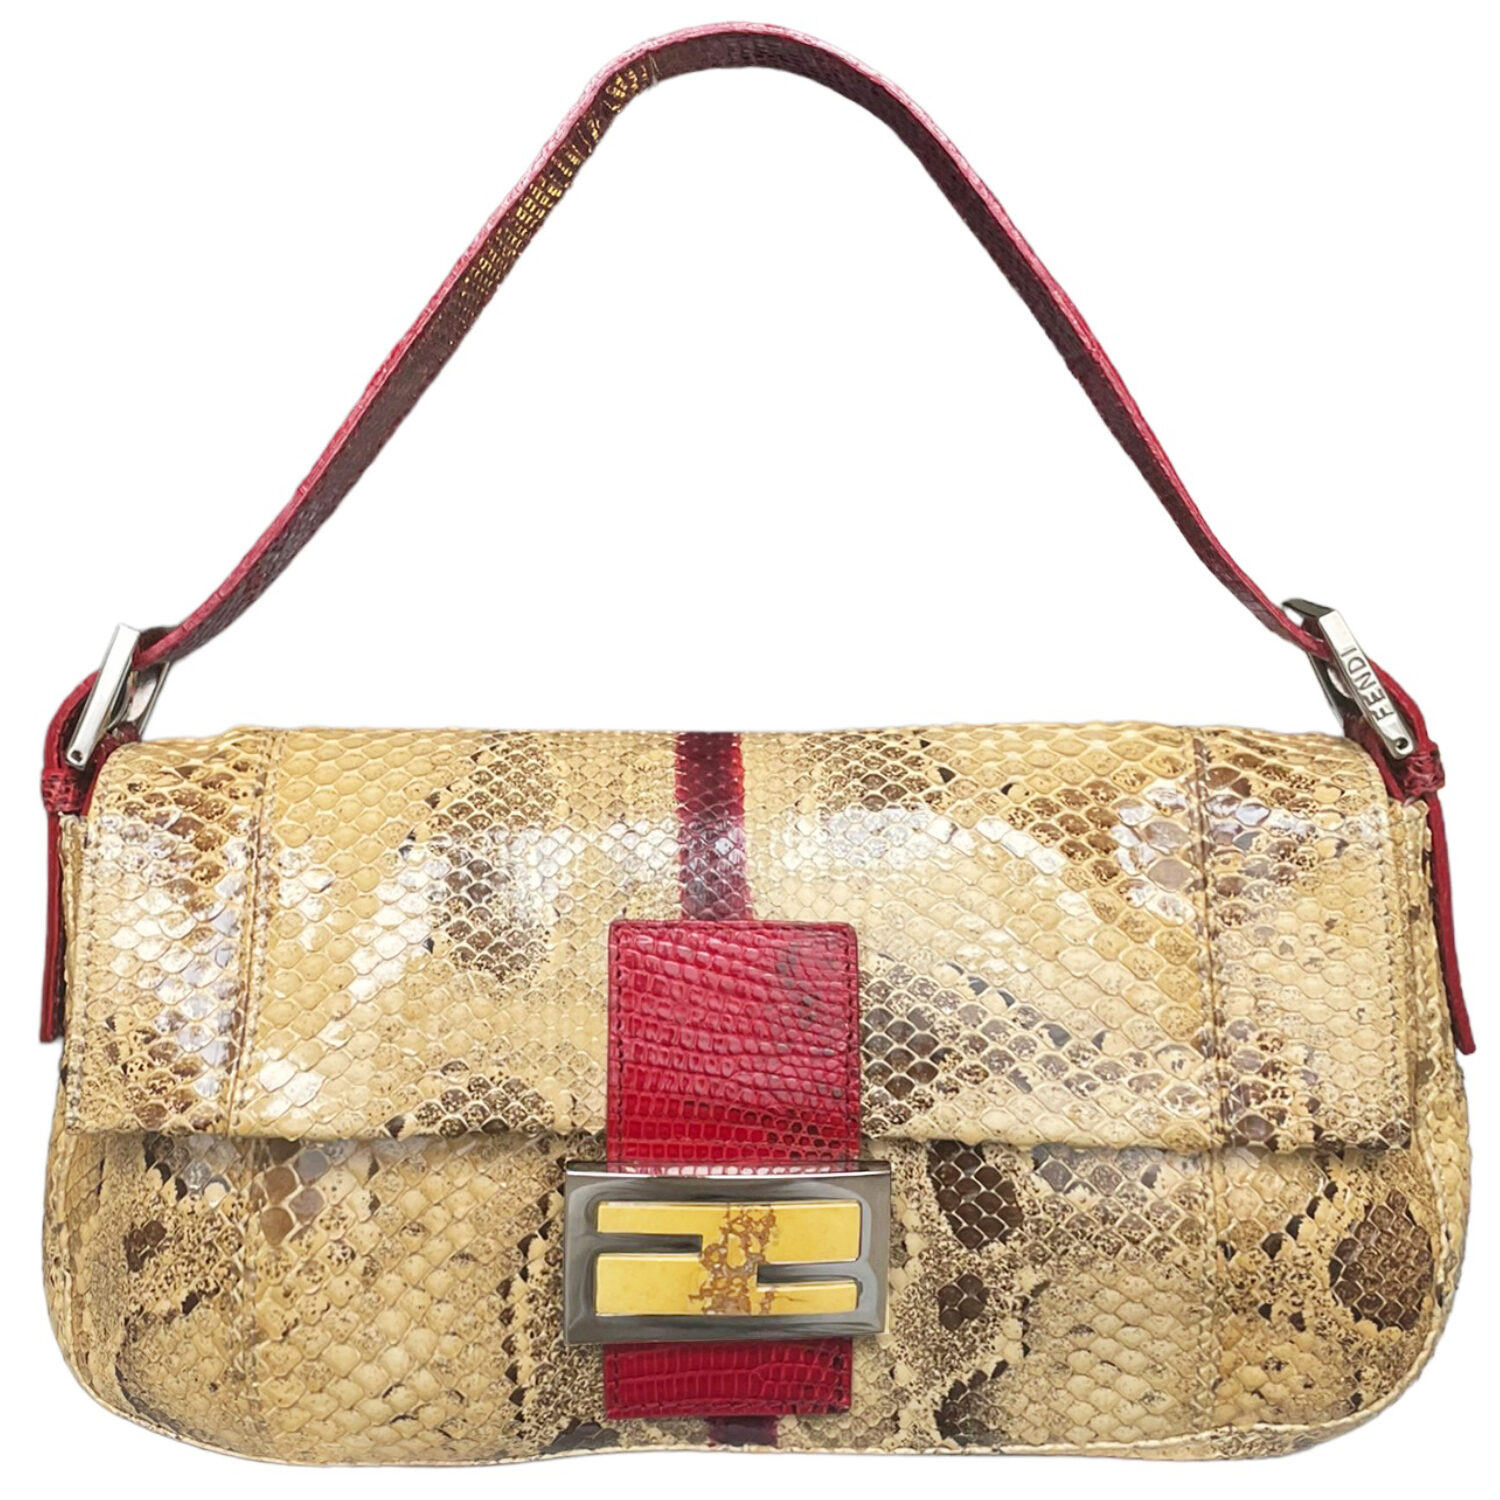 Vintage Fendi Python Snakeskin Shoulder Baguette Bag in Beige with Red Lizard Trim | NITRYL